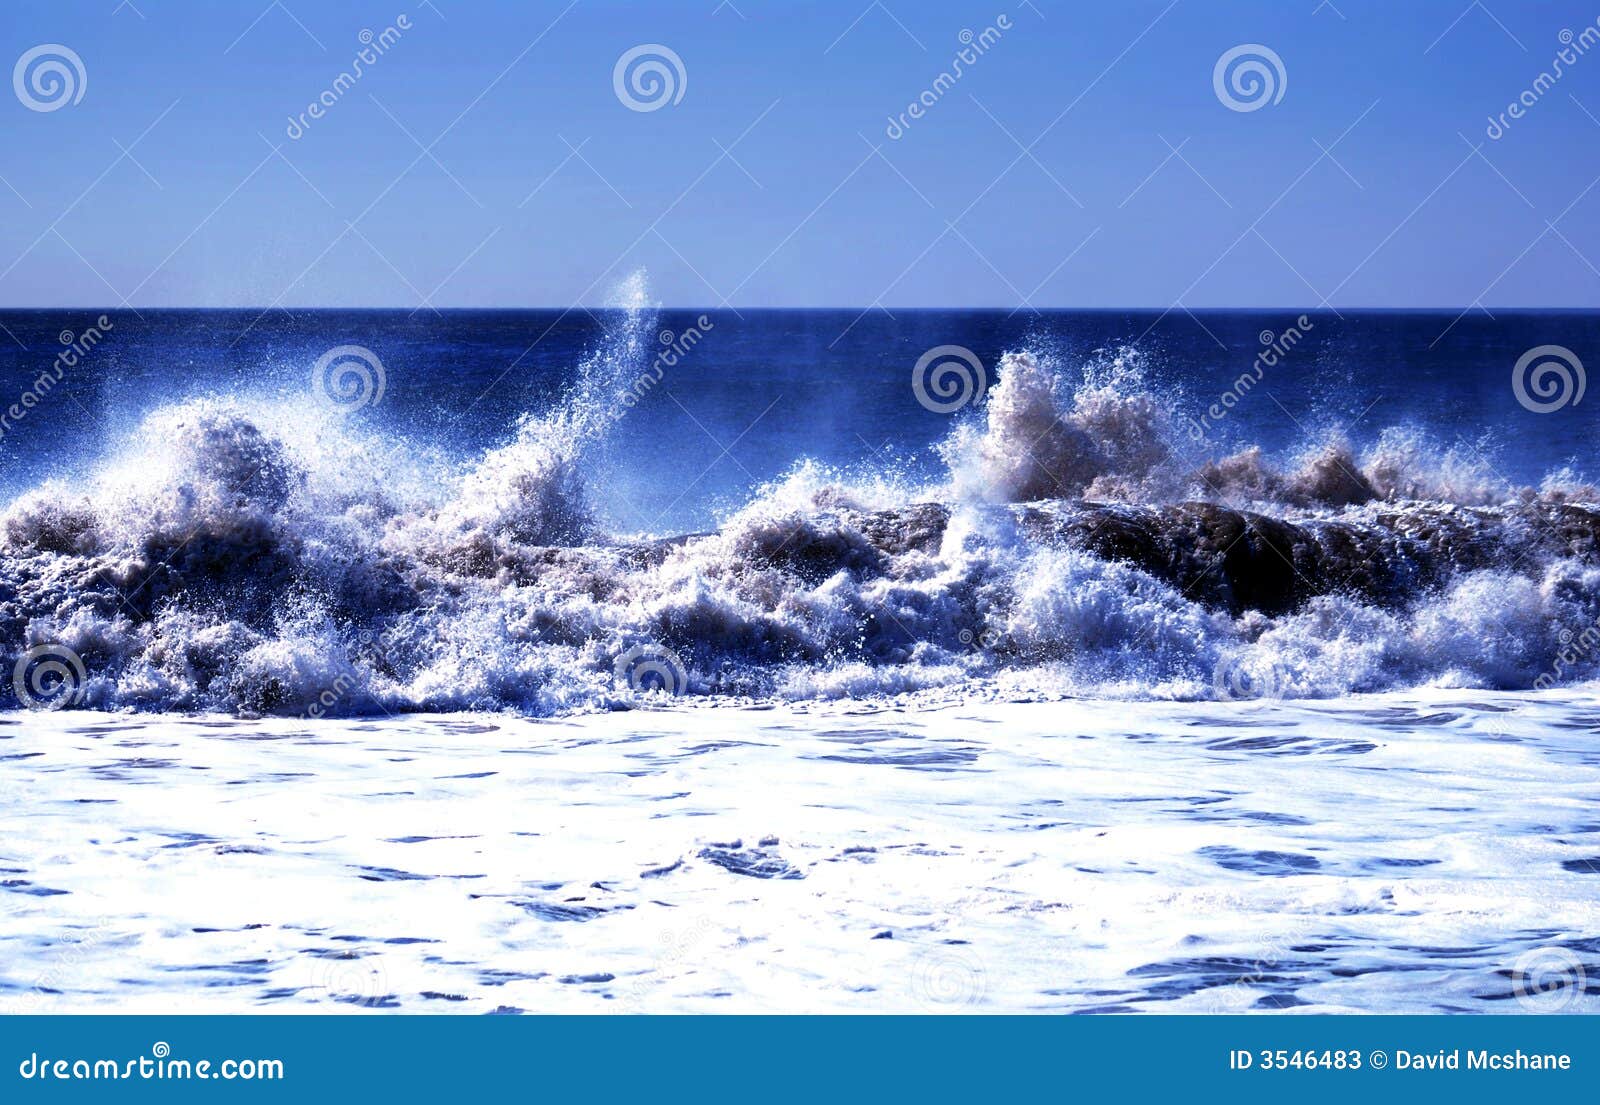 waves crashing hard